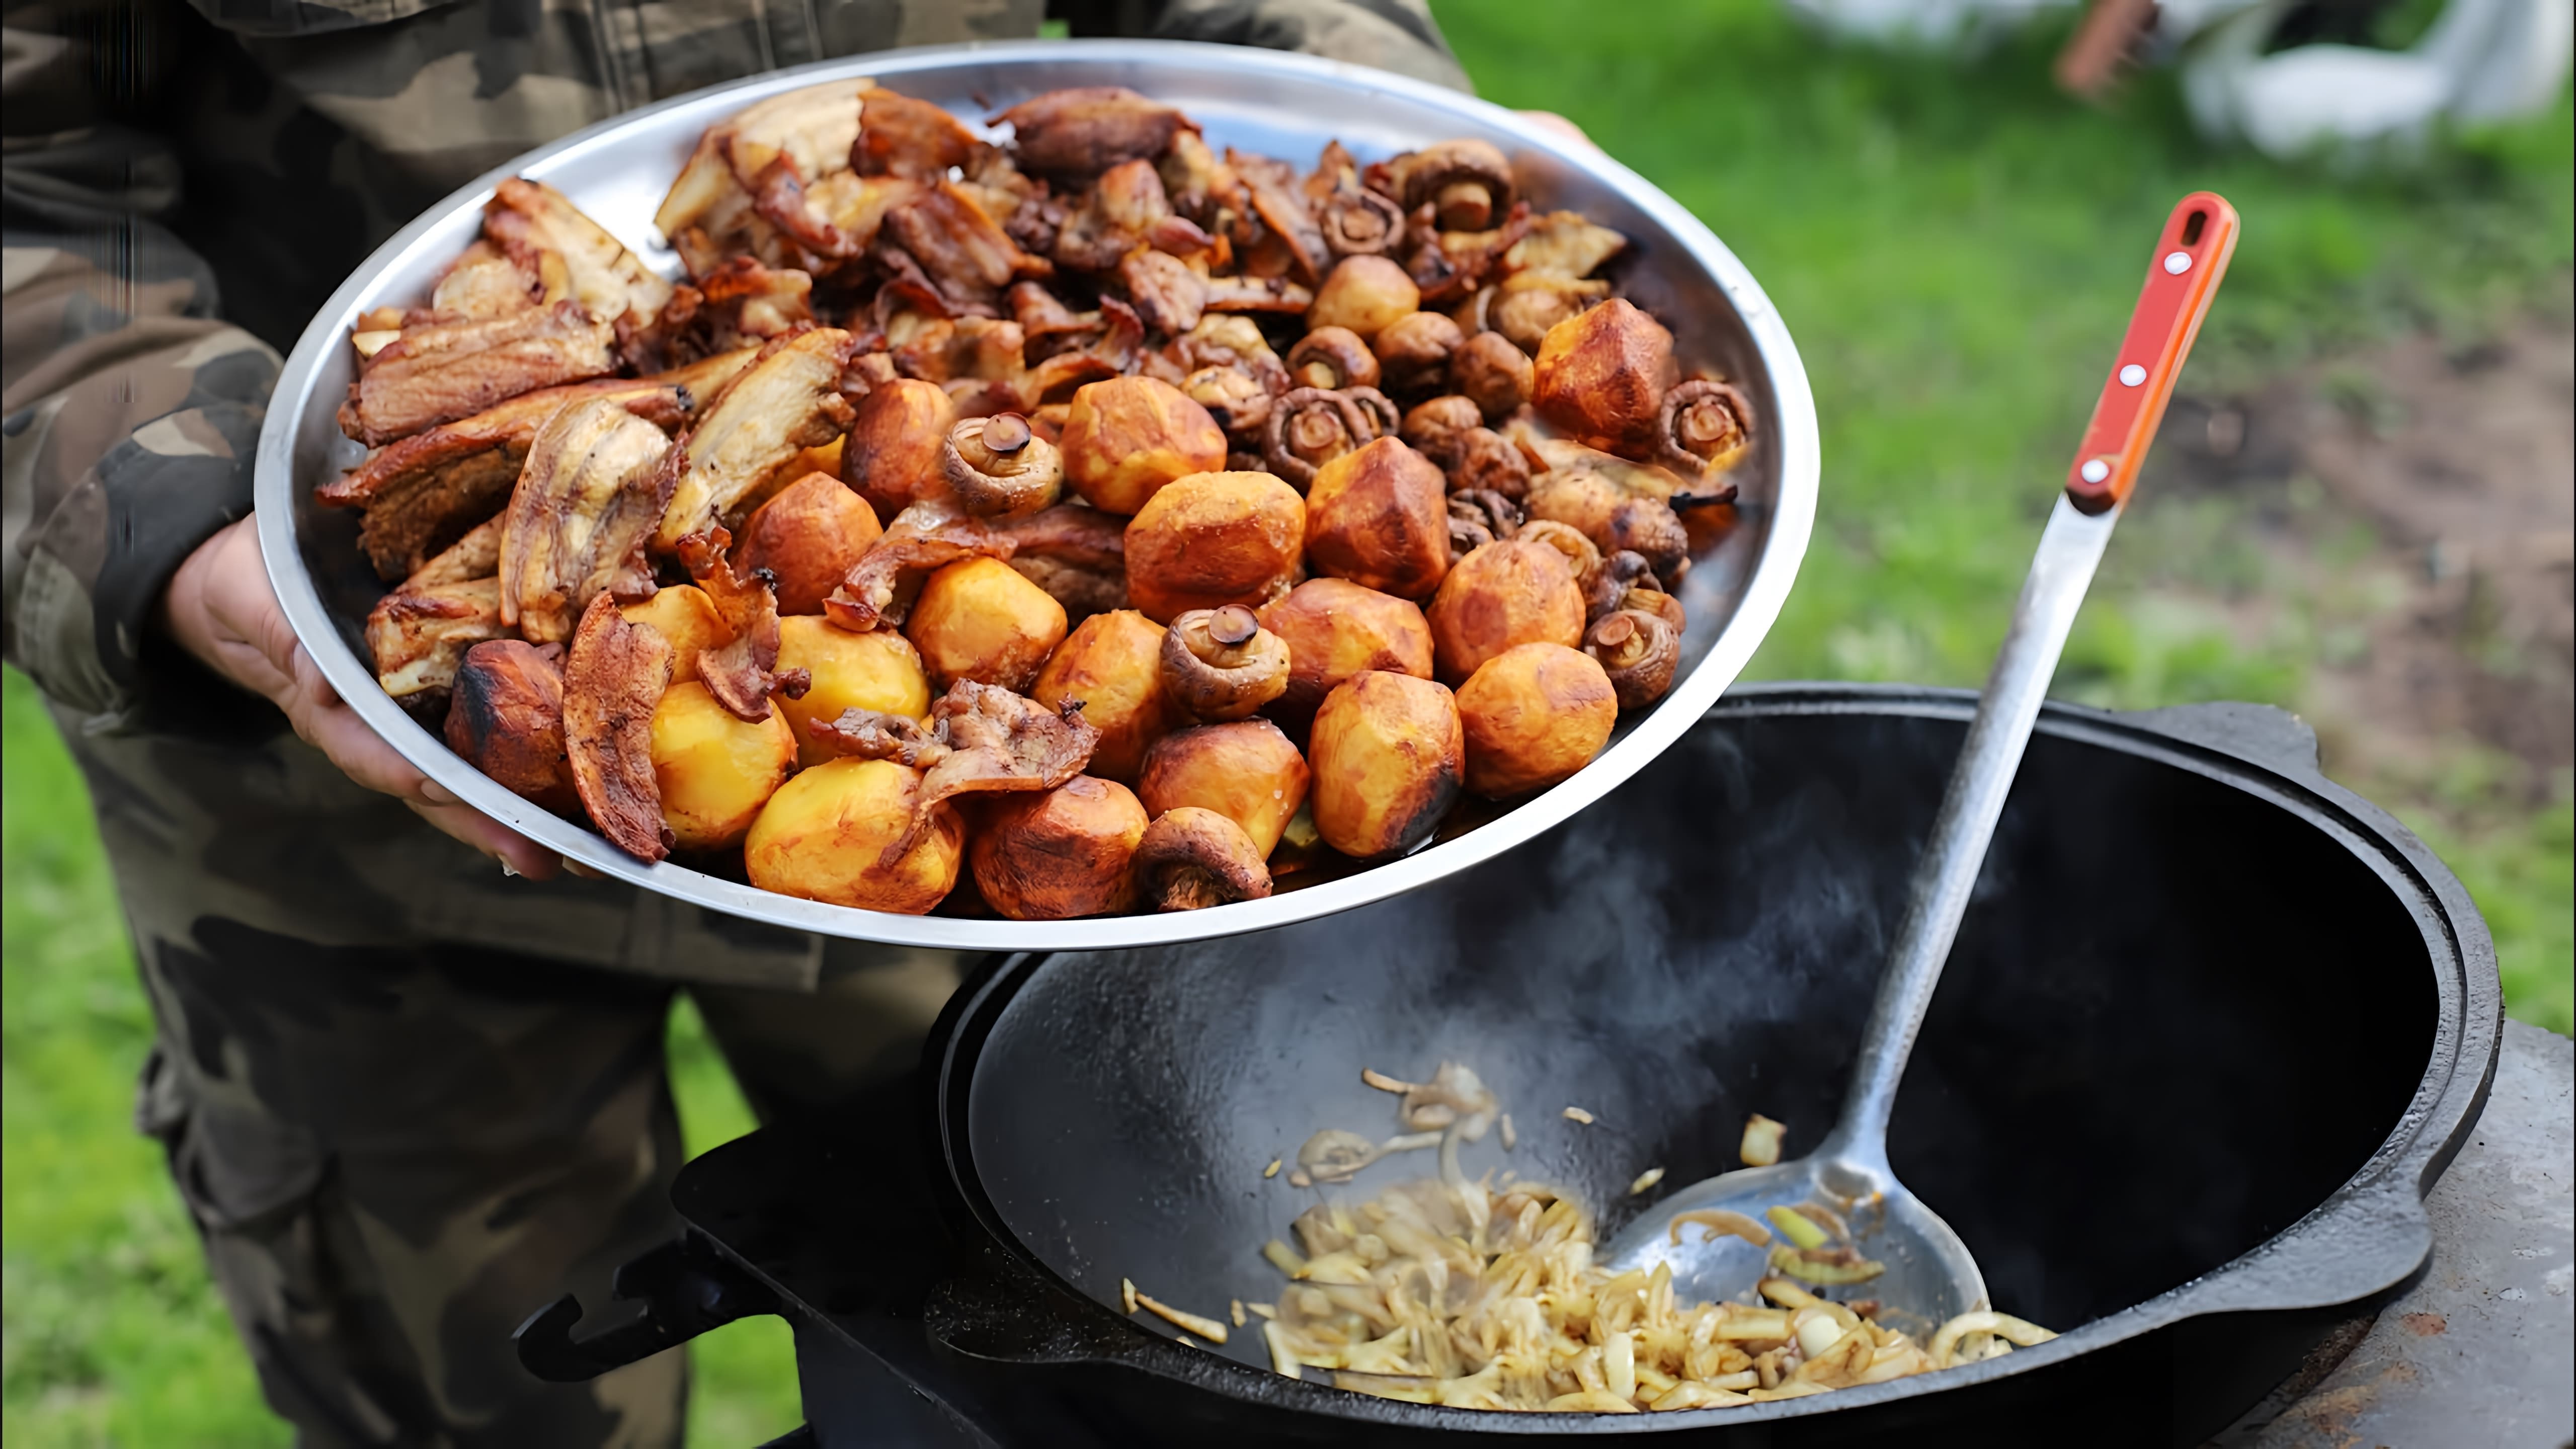 Видео как приготовить традиционное русское блюдо из мяса, картофеля и овощей, готовленное в большом котле над открытым огнем